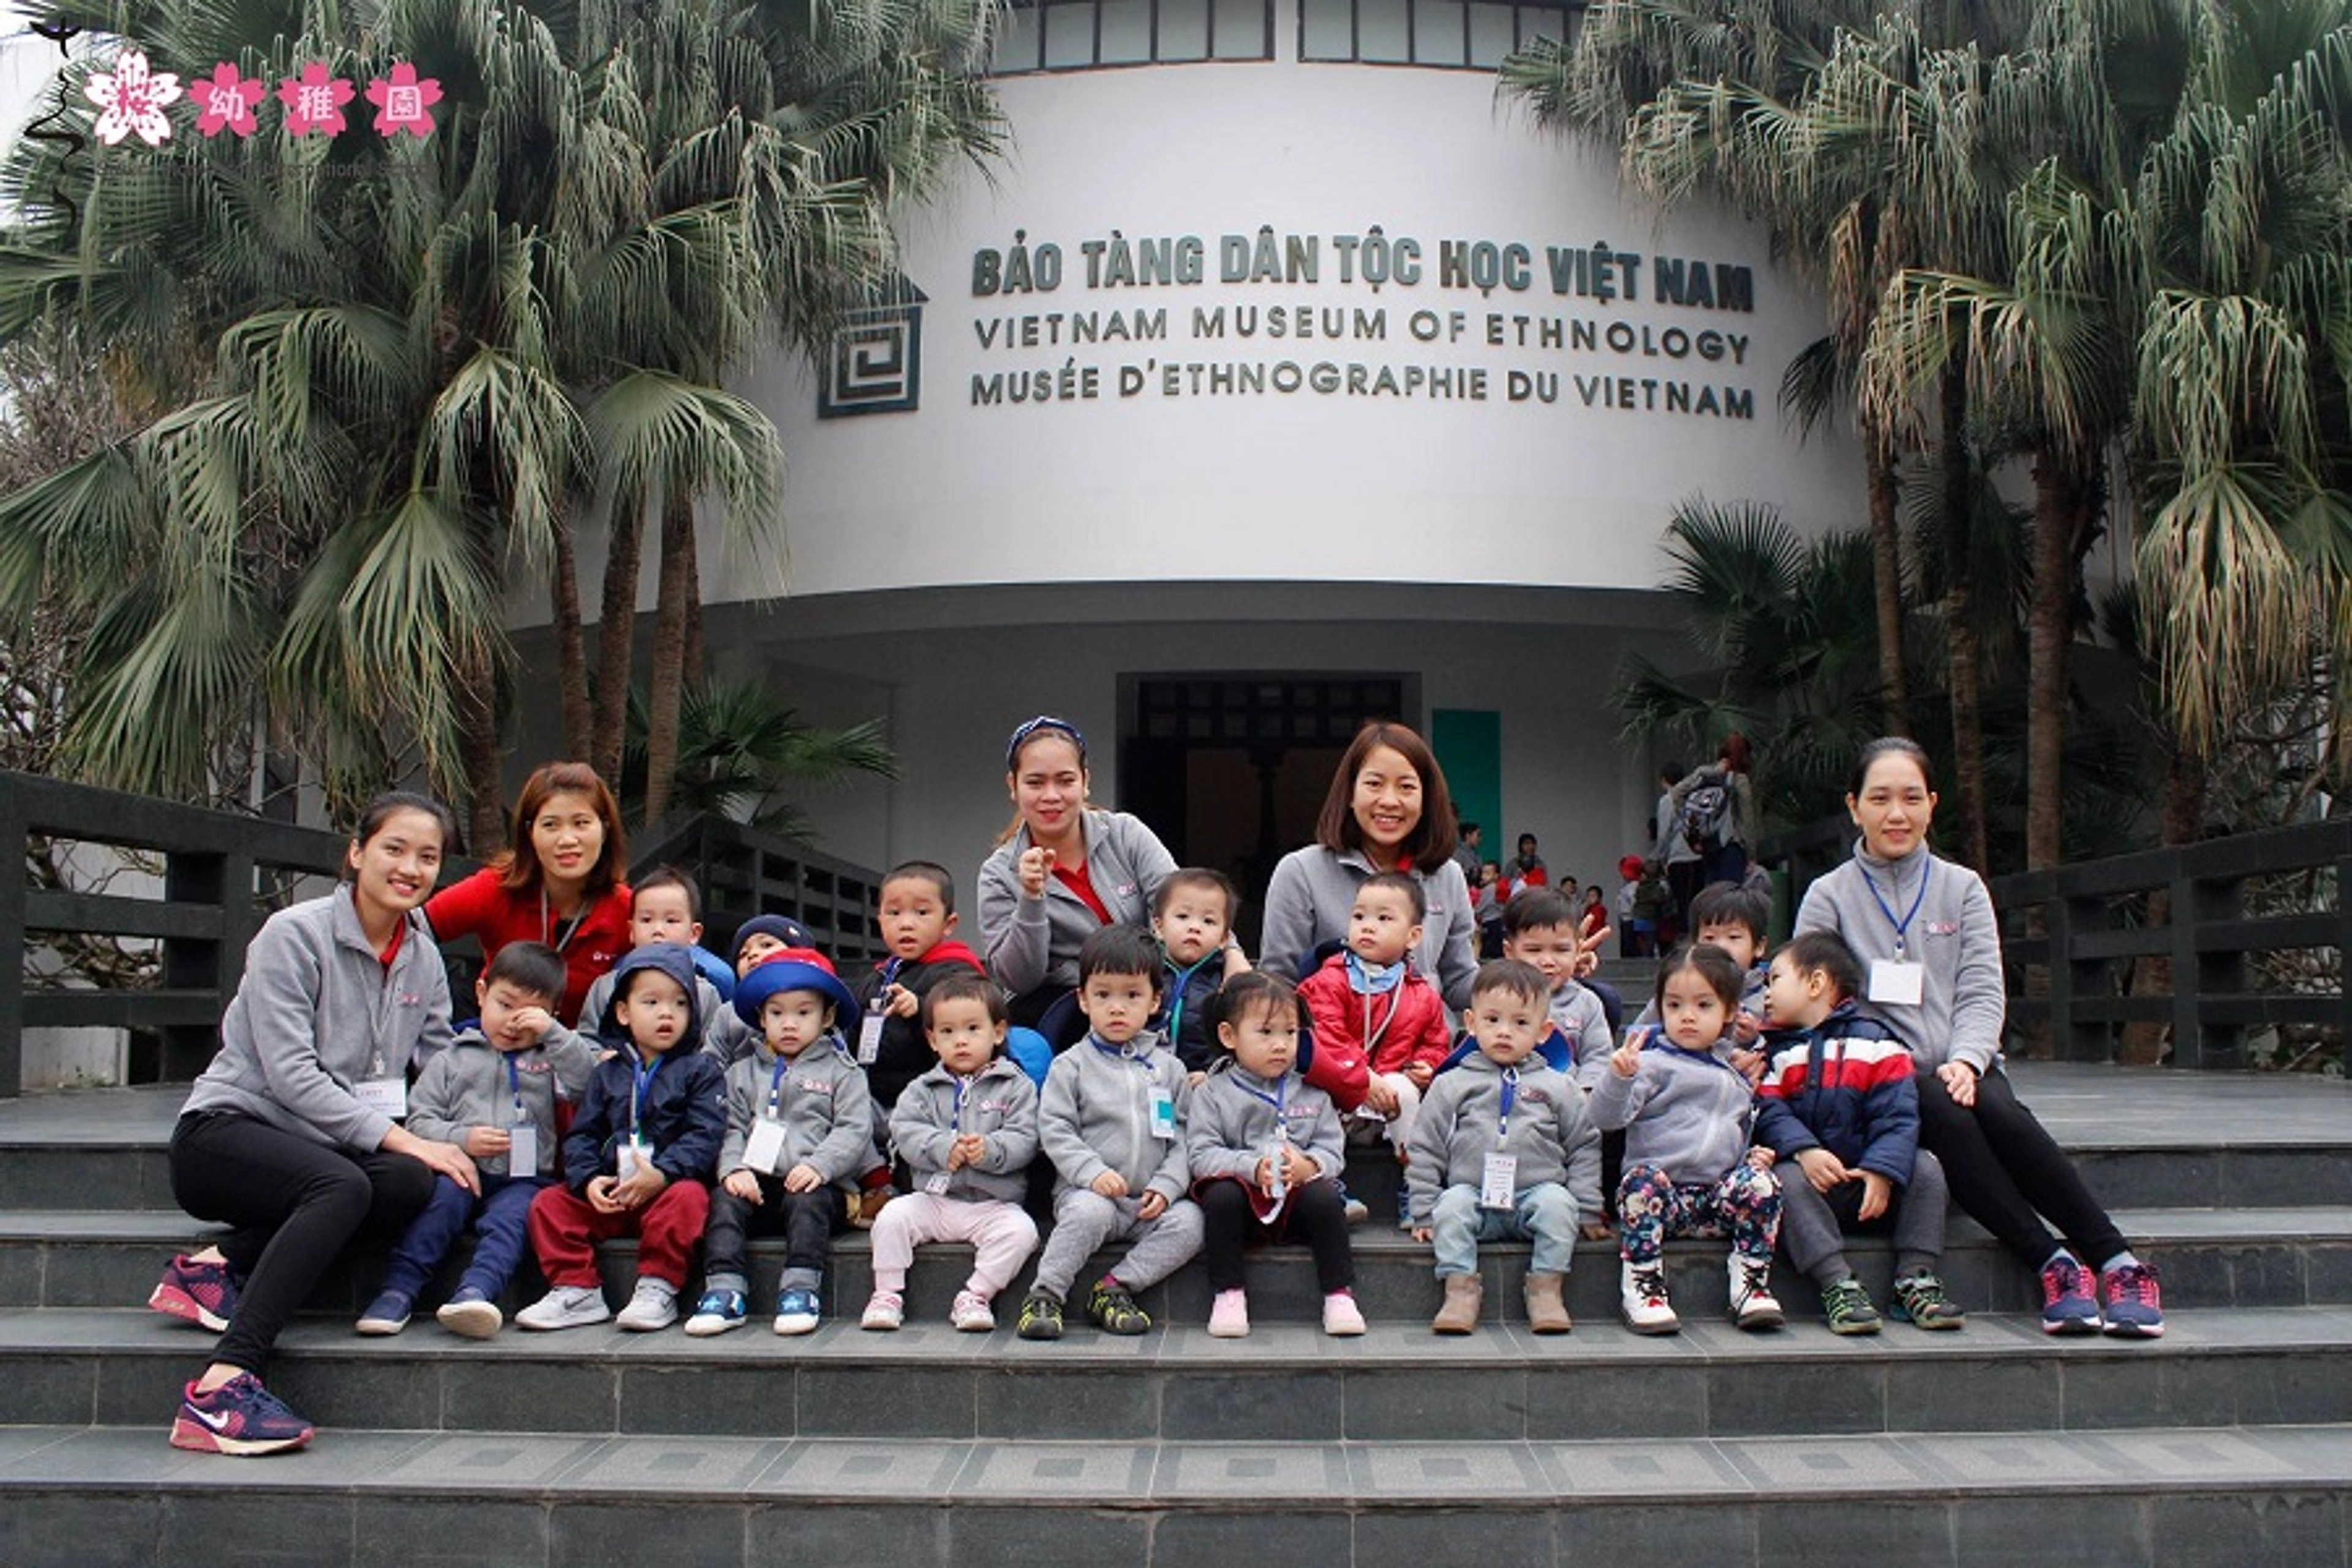 Bảo tàng dân tộc học Việt Nam - Điểm đến hấp dẫn cho du khách yêu văn hóa